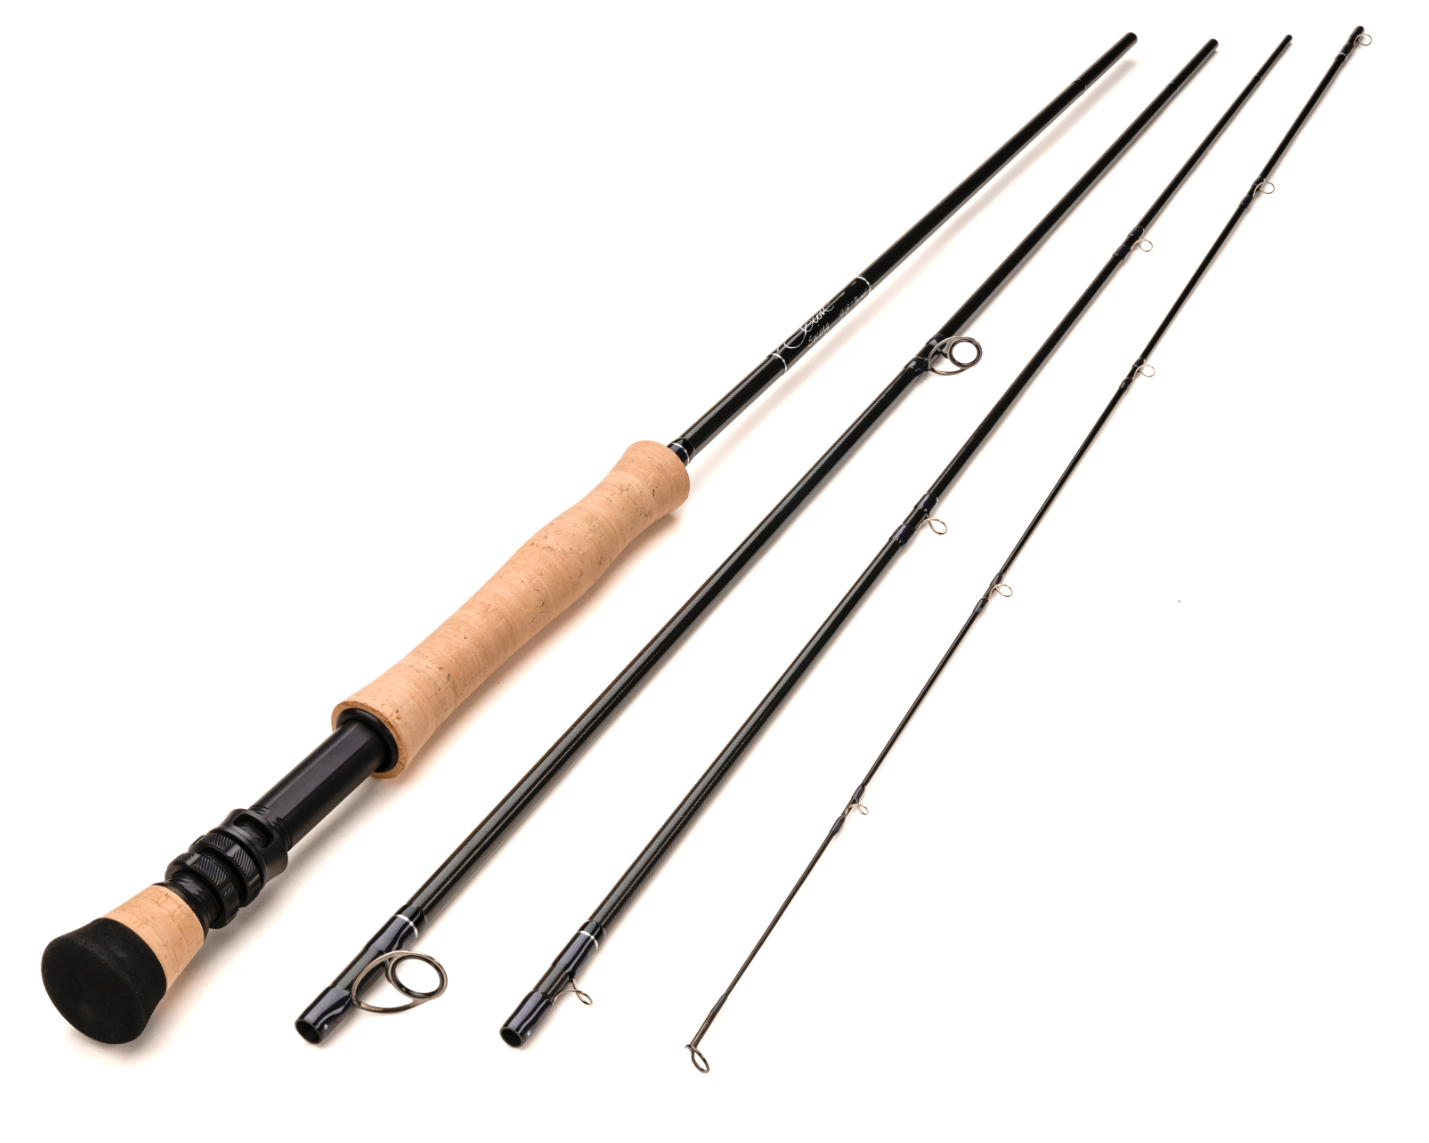 Scott Swing Fly Rod for sale online is a best steelhead and salmon fly fishing rod.